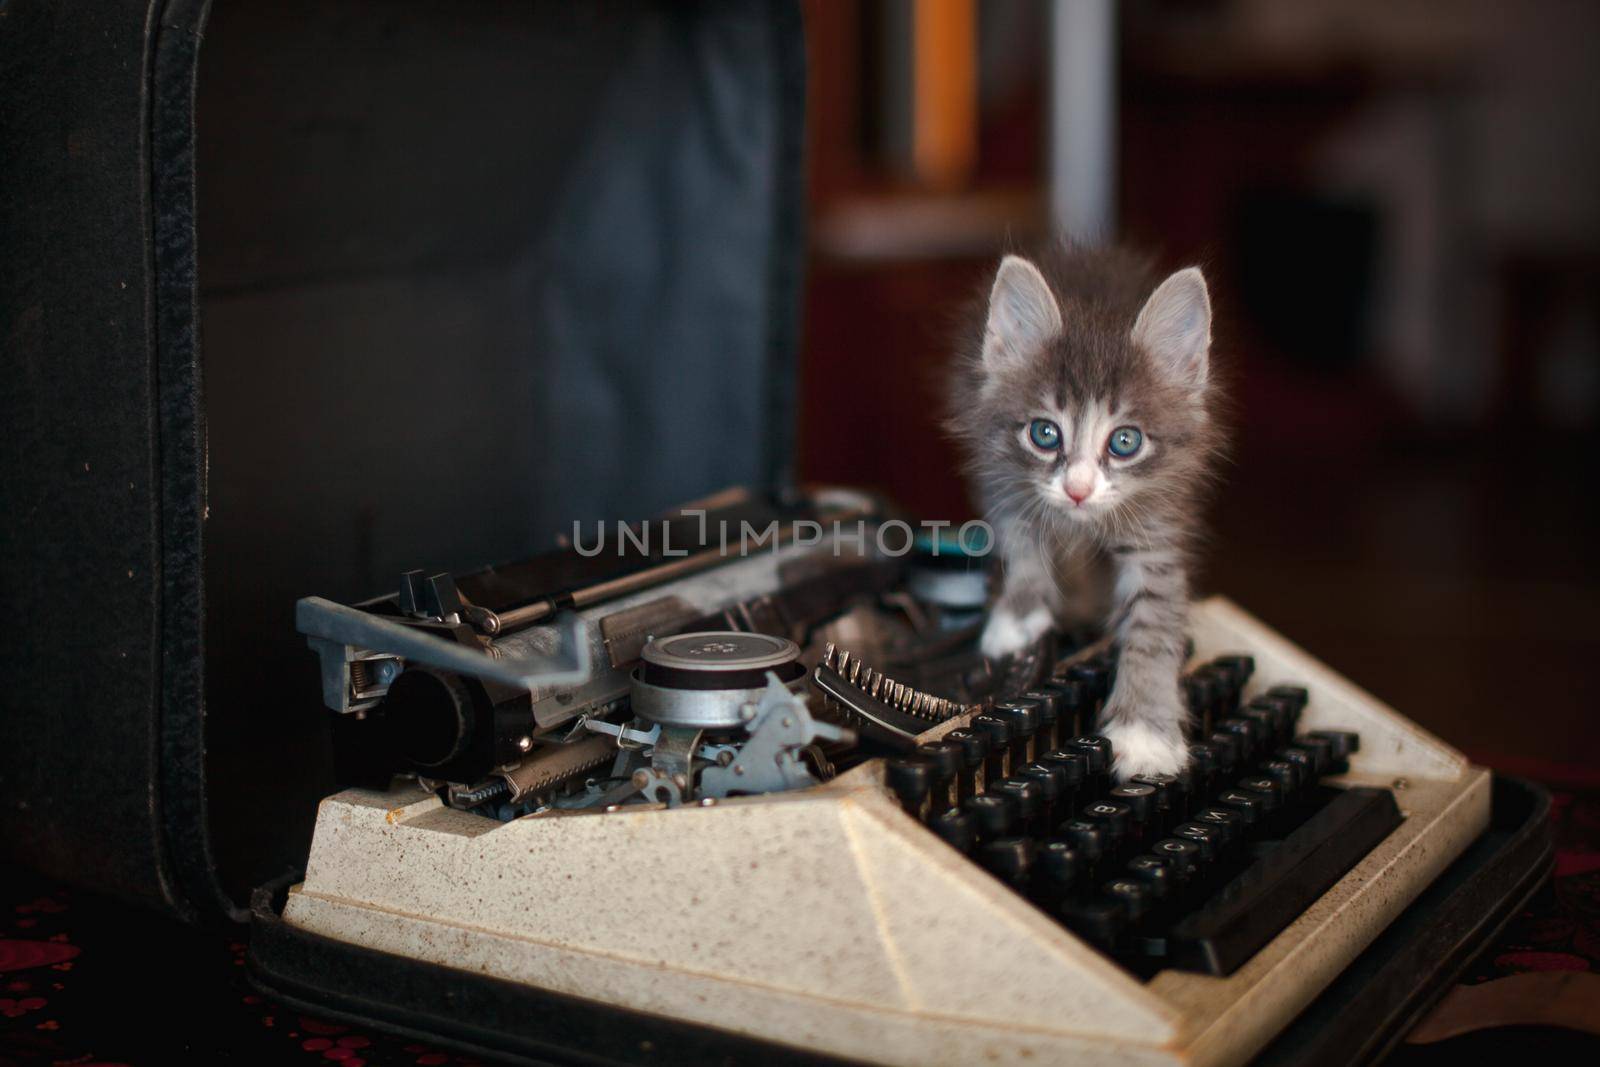 A kitten walking on an old typewriter by deandy